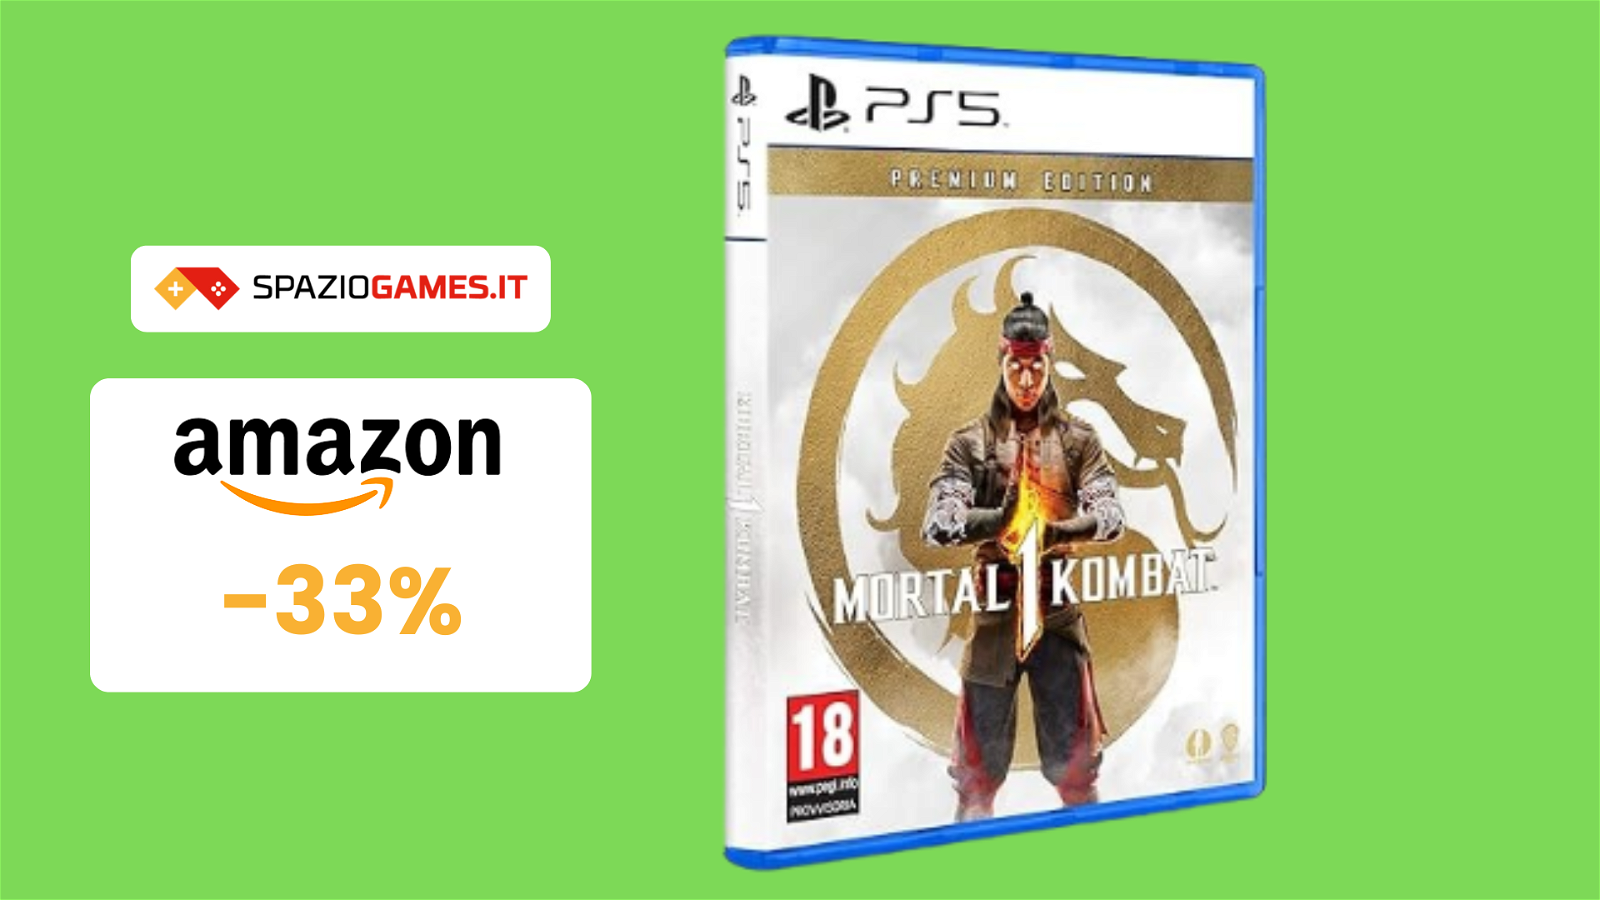 Mortal Kombat 1 Premium Edition per PS5 a 66€: -33%!